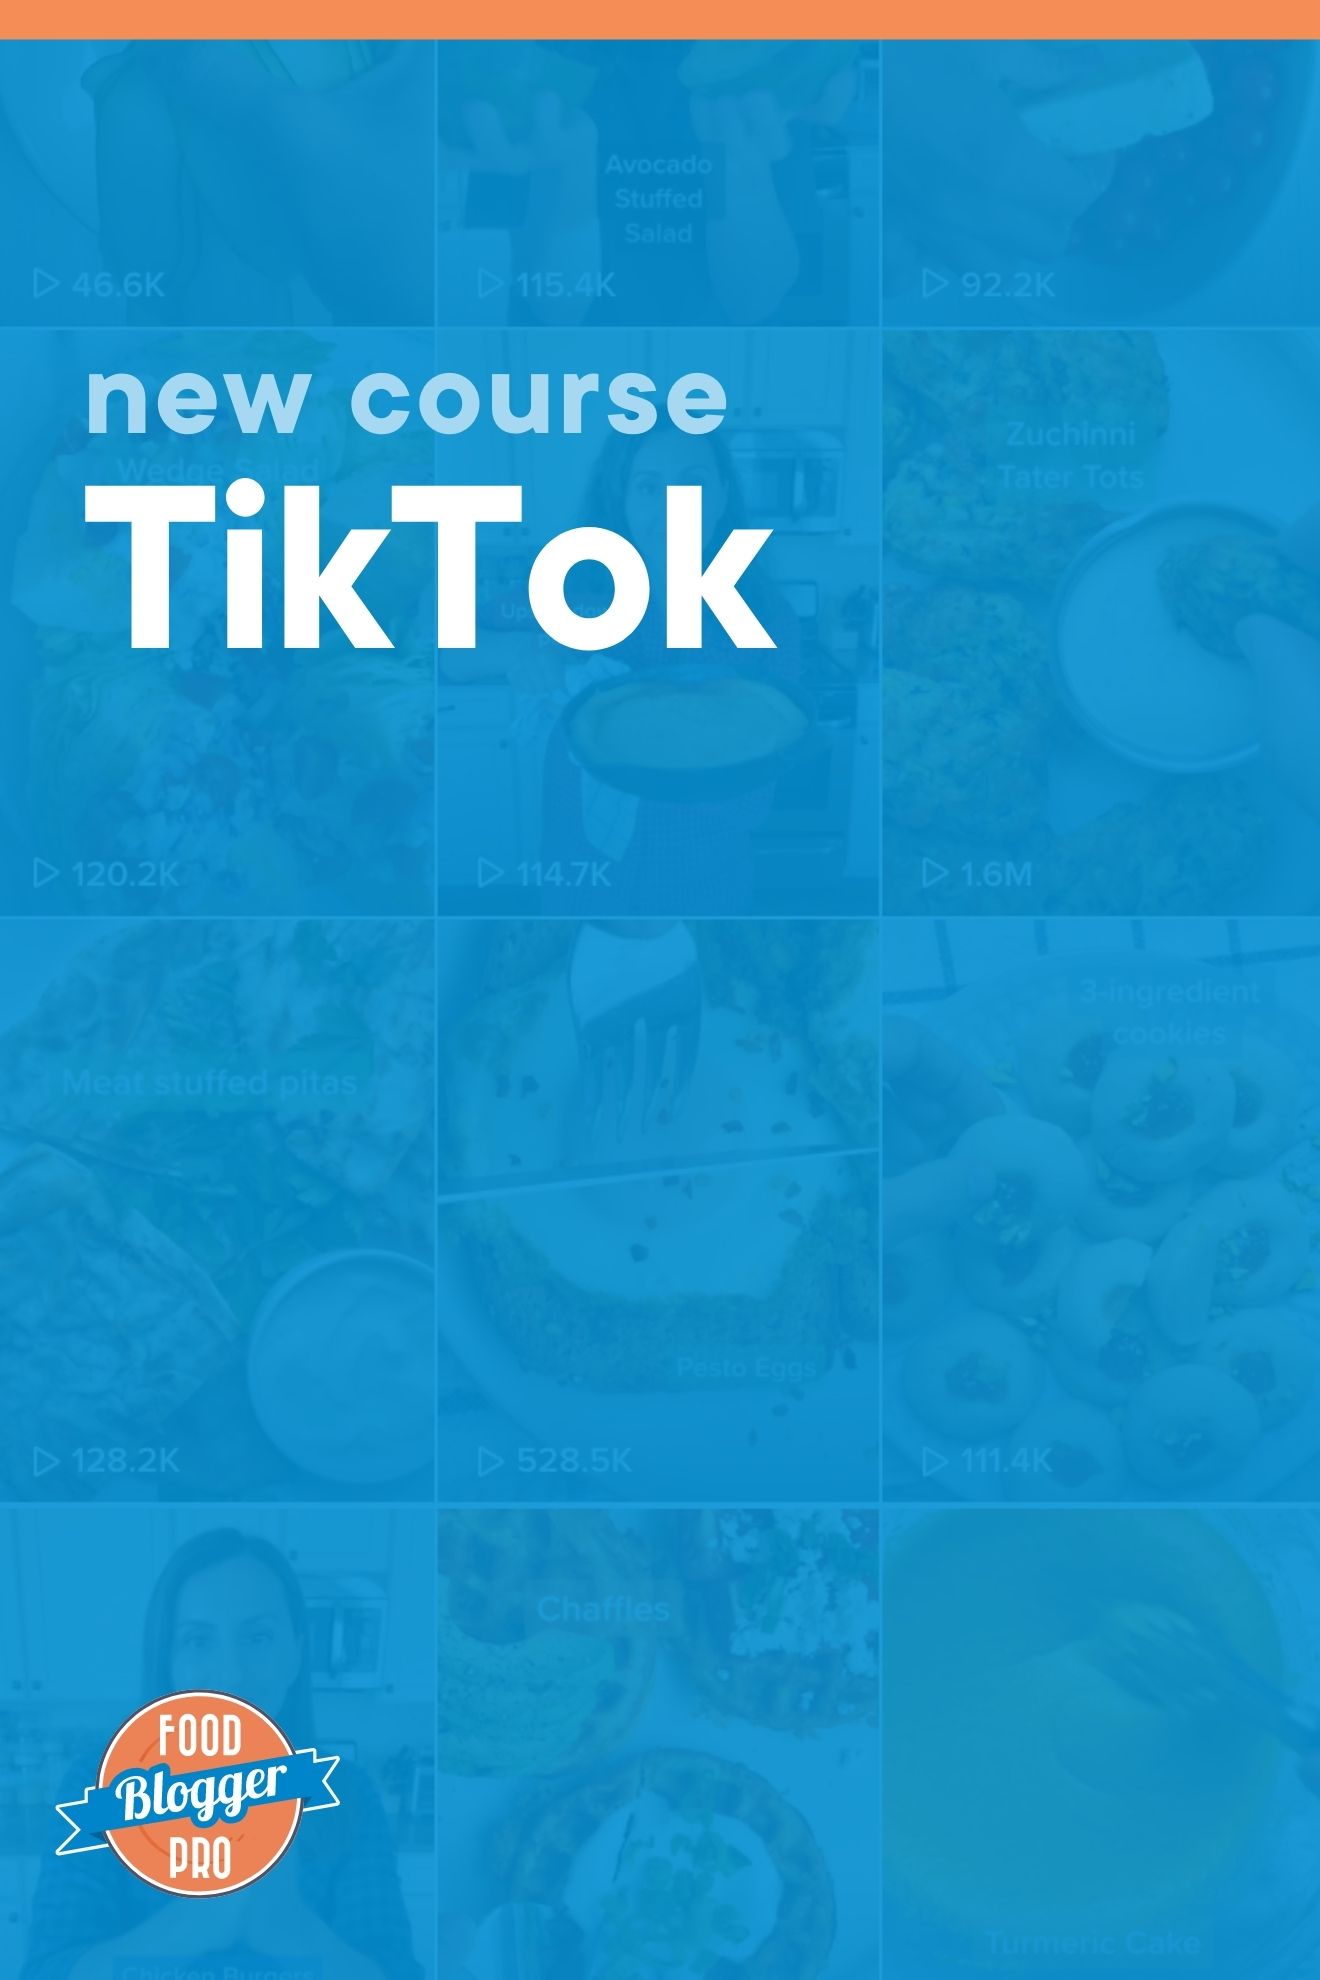 皇冠体育投注下载蓝图Tiktok feed与Food博客Pro标识读新课程TikTok